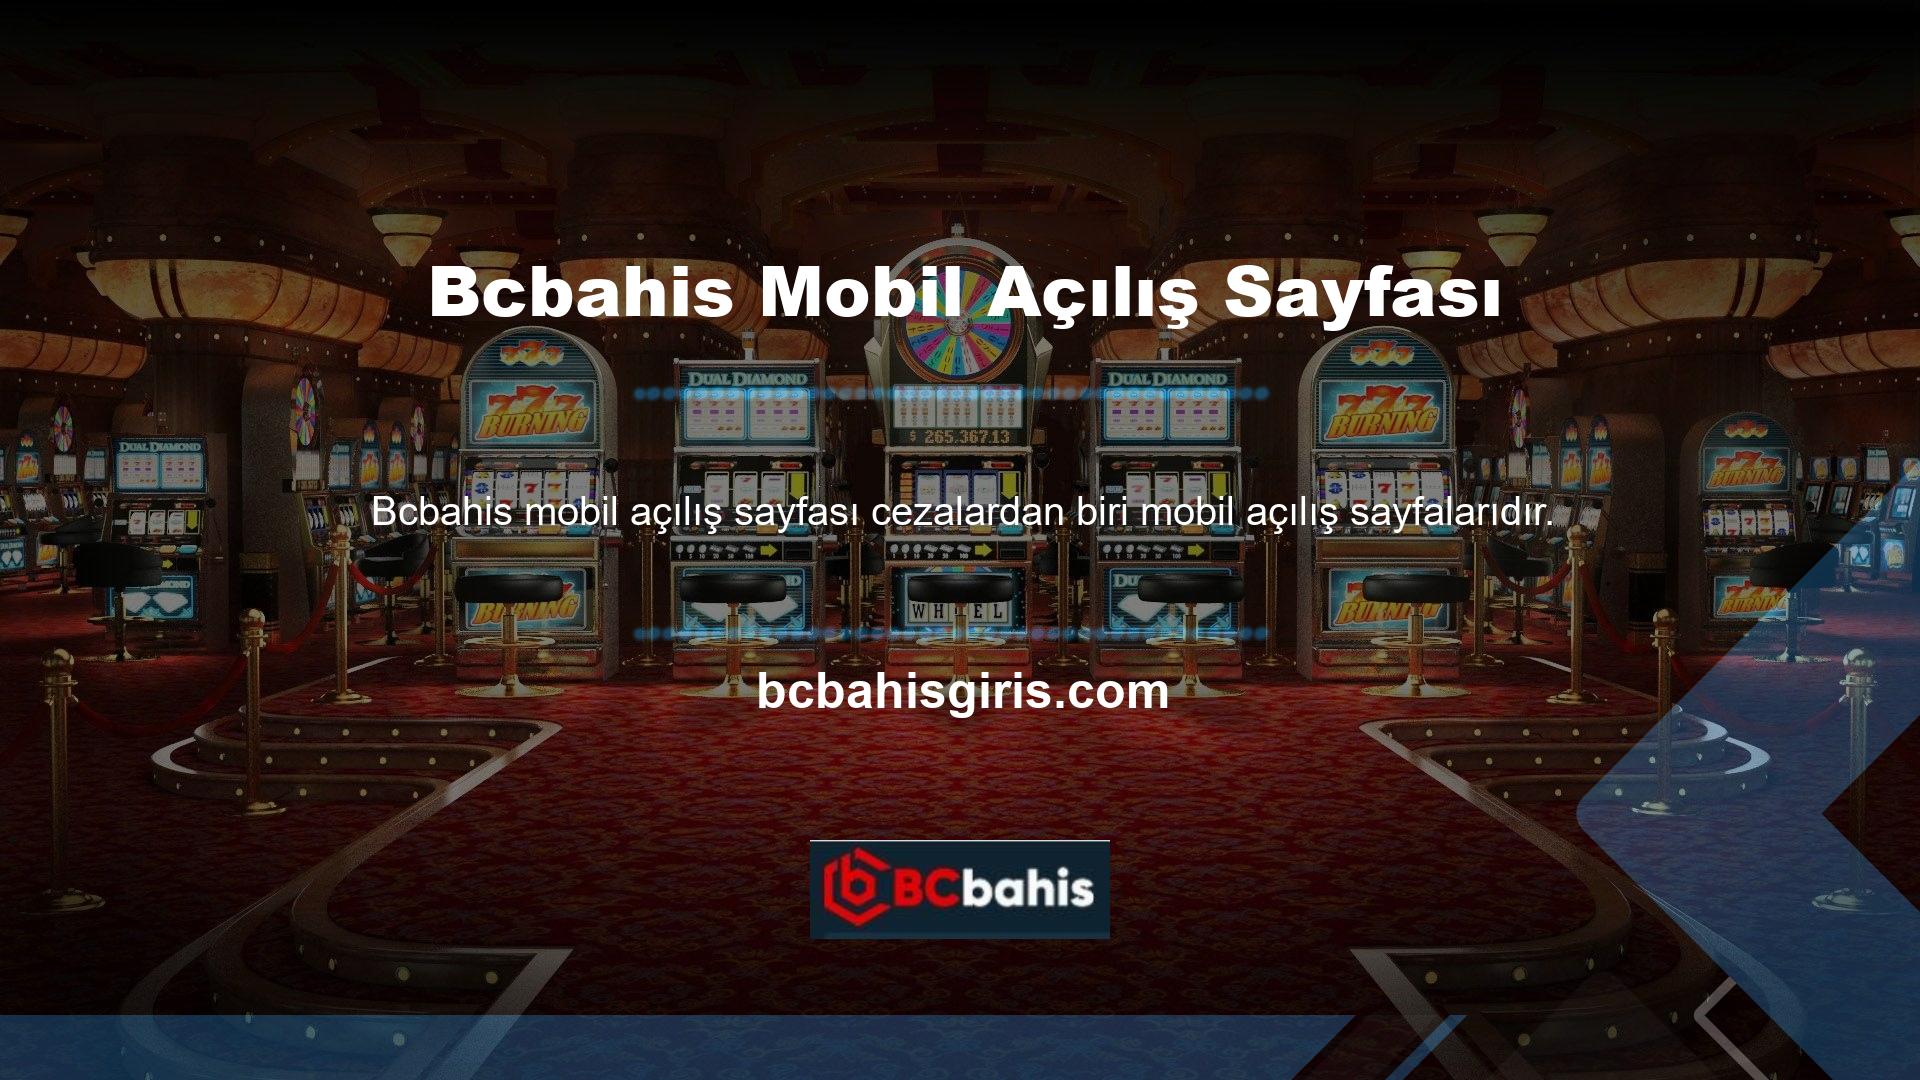 Üstelik Bcbahis sitesinde halihazırda kullanılan adresi kullanarak mobil giriş adresinize kolaylıkla ulaşabilir ve istediğiniz tüm oyunları oynayabilirsiniz